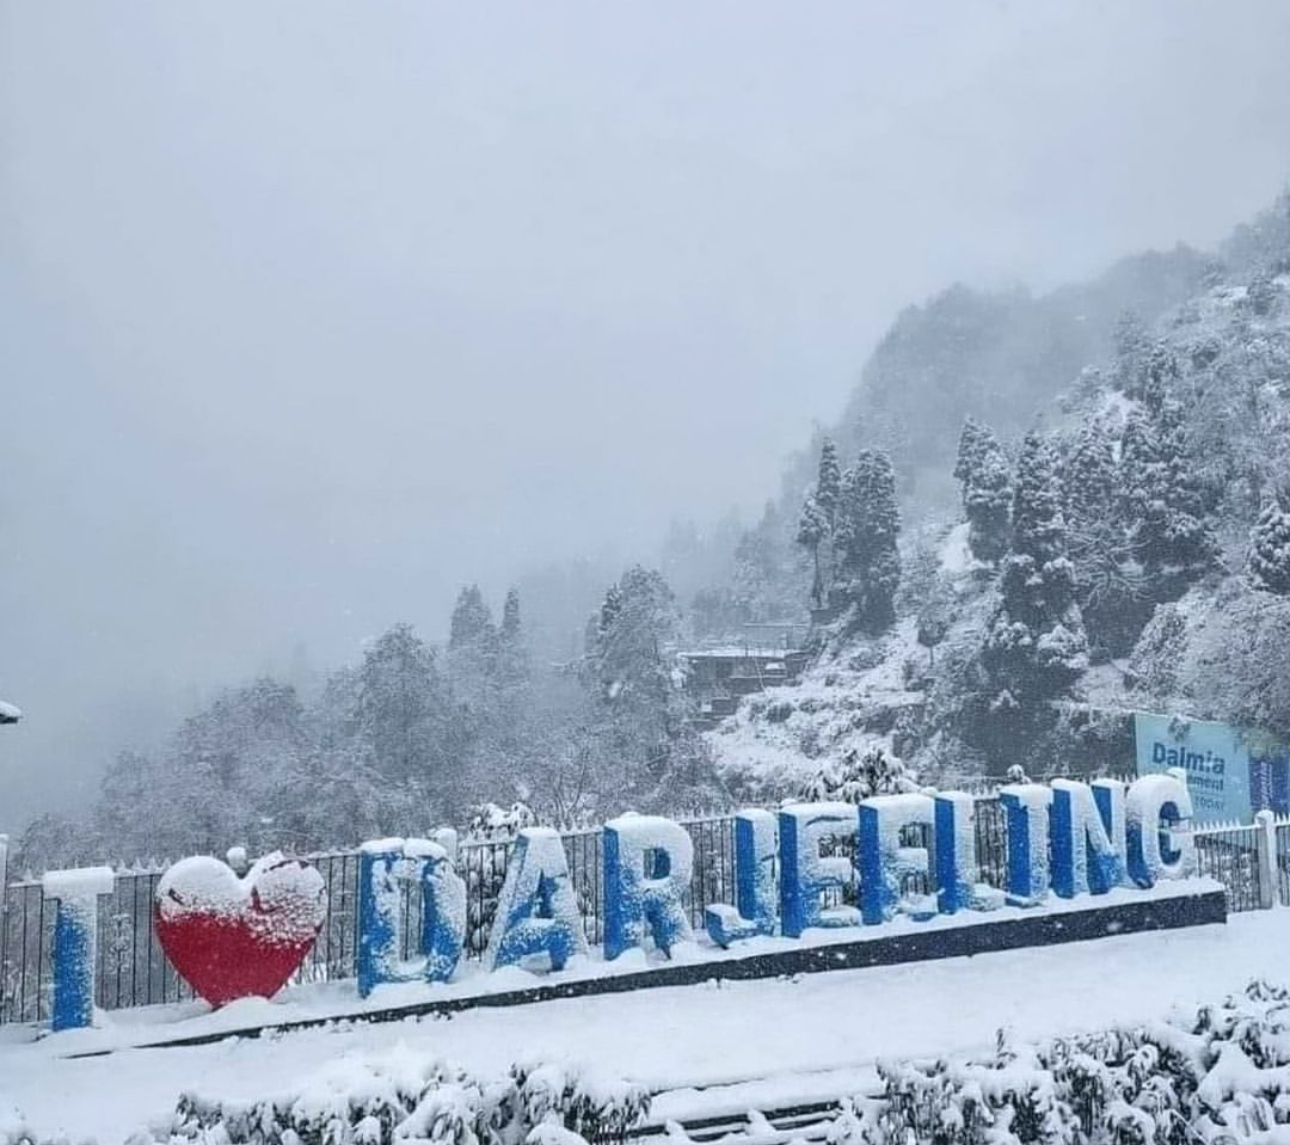 Explore Darjeeling: Top Tour Destinations and Activities